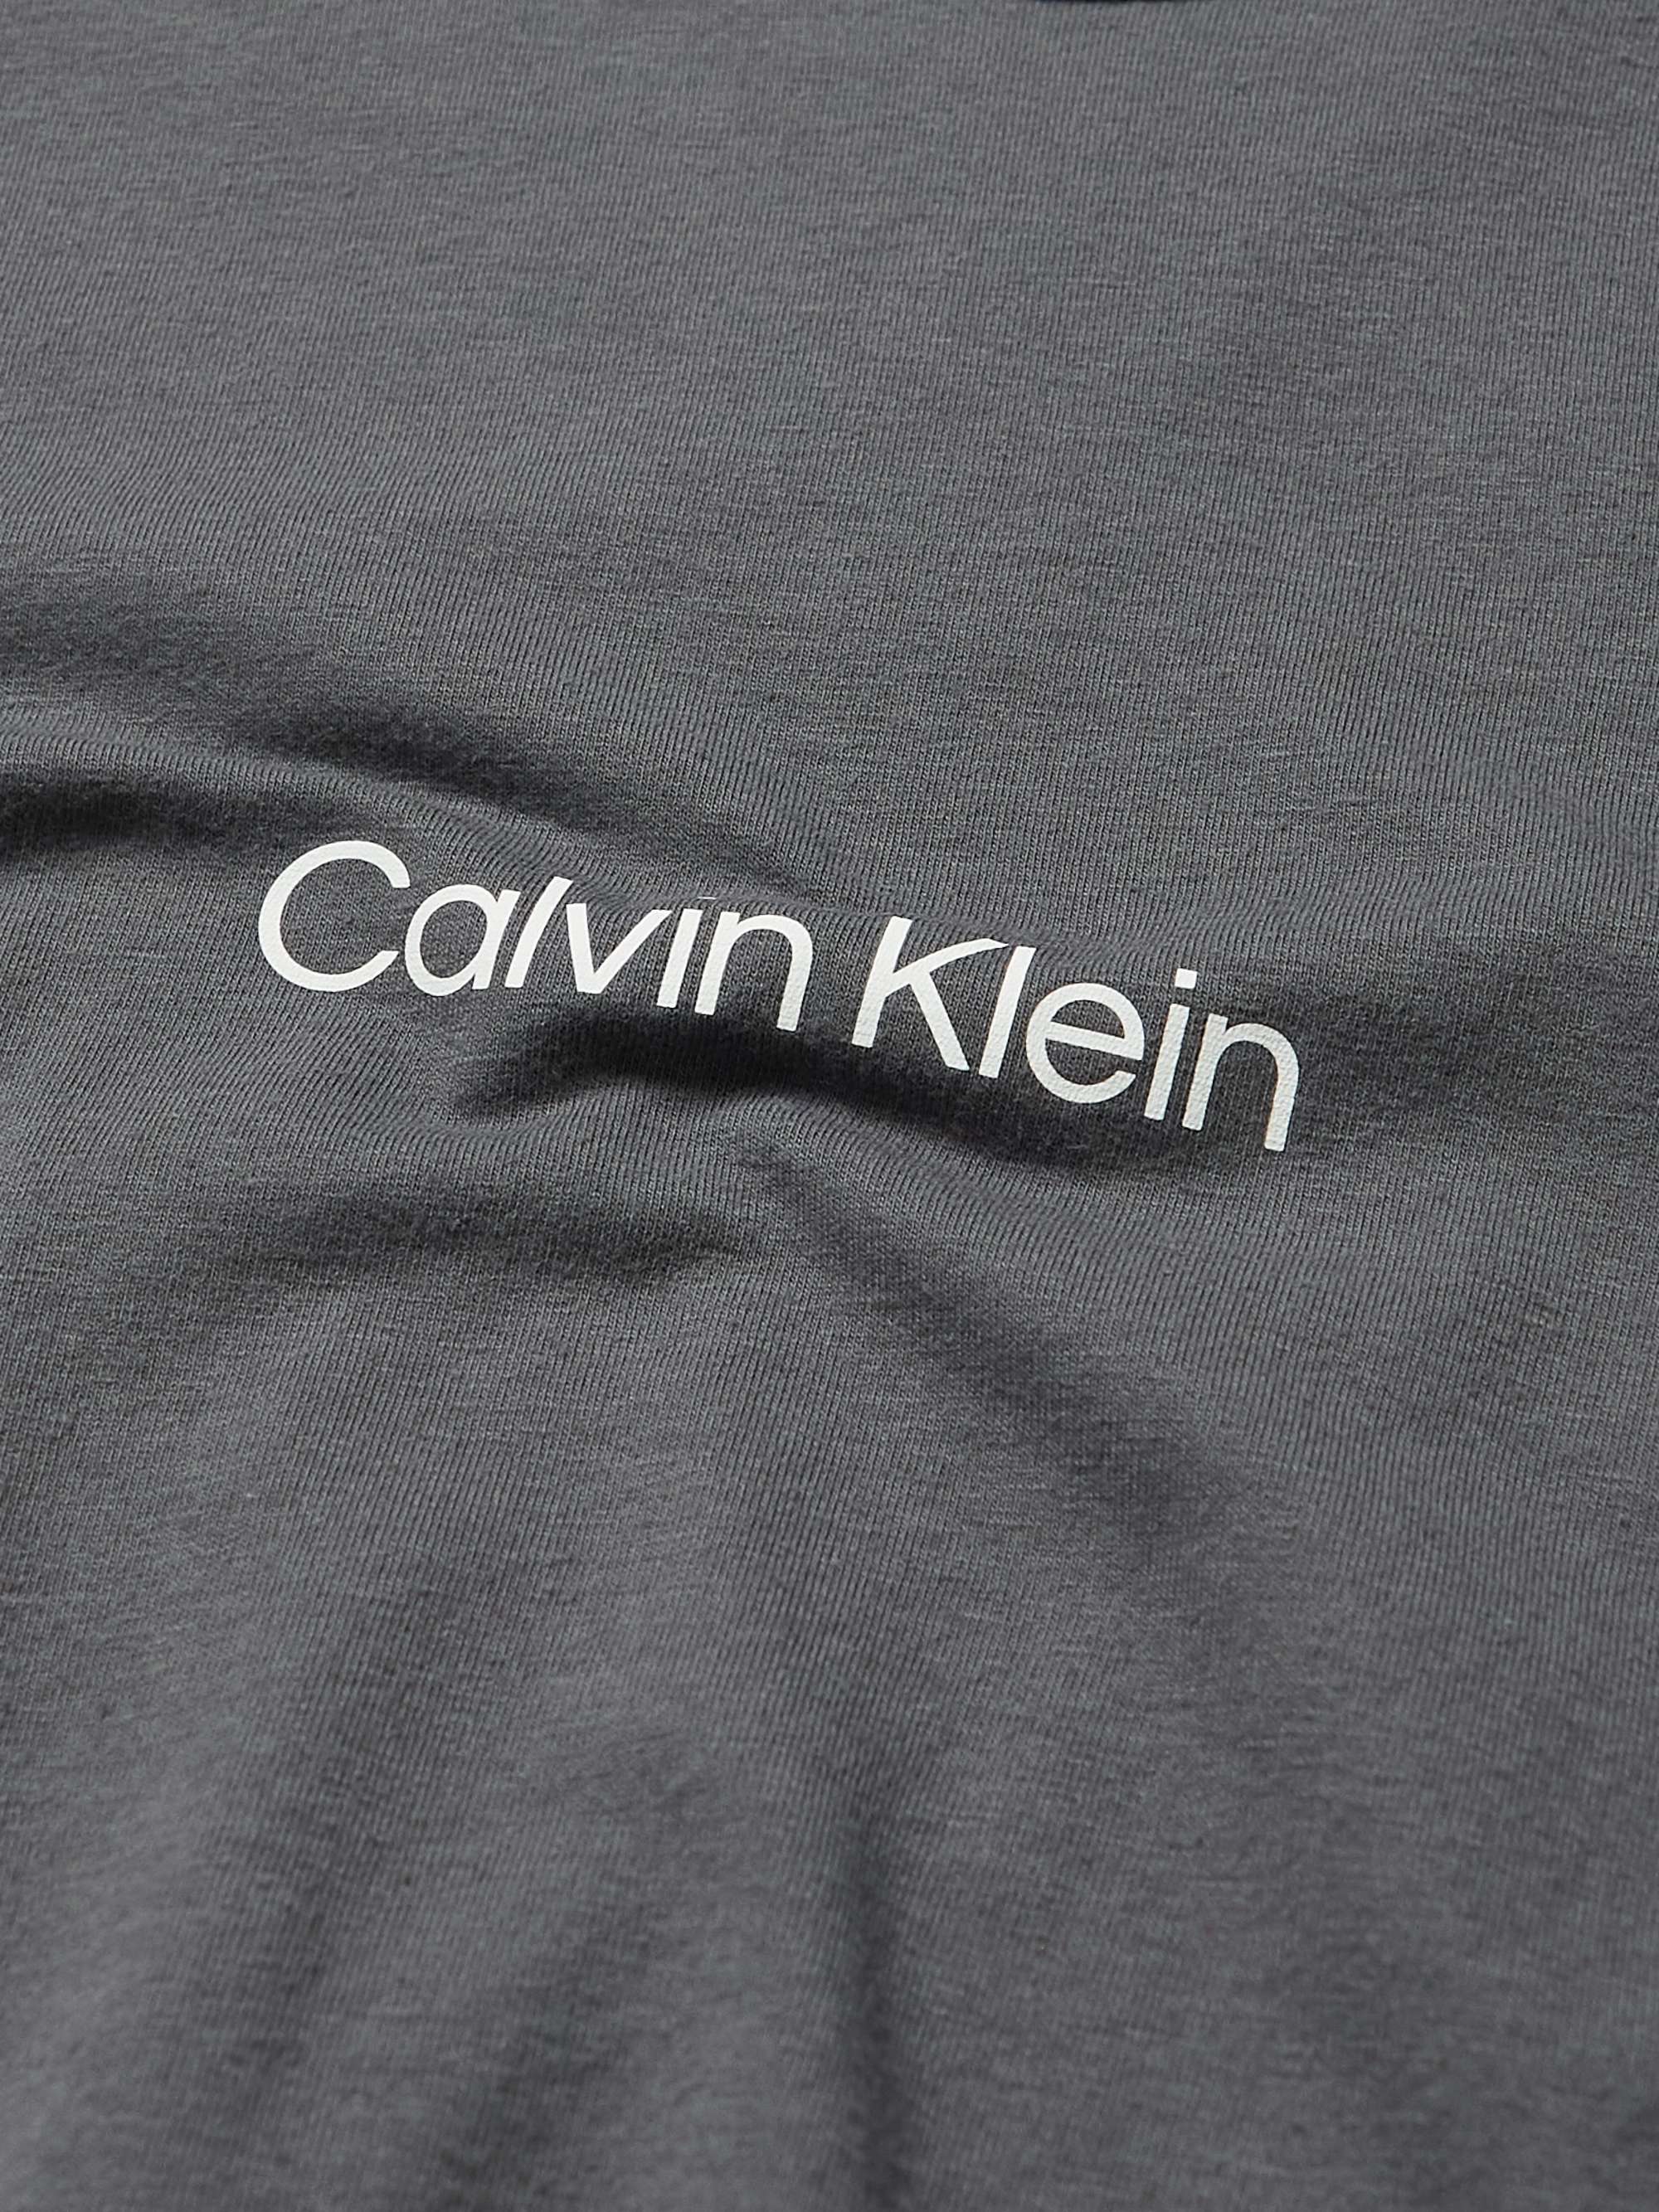 CALVIN KLEIN UNDERWEAR Modern Structure Lounge Stretch Cotton-Blend Jersey  Pyjama Top | MR PORTER